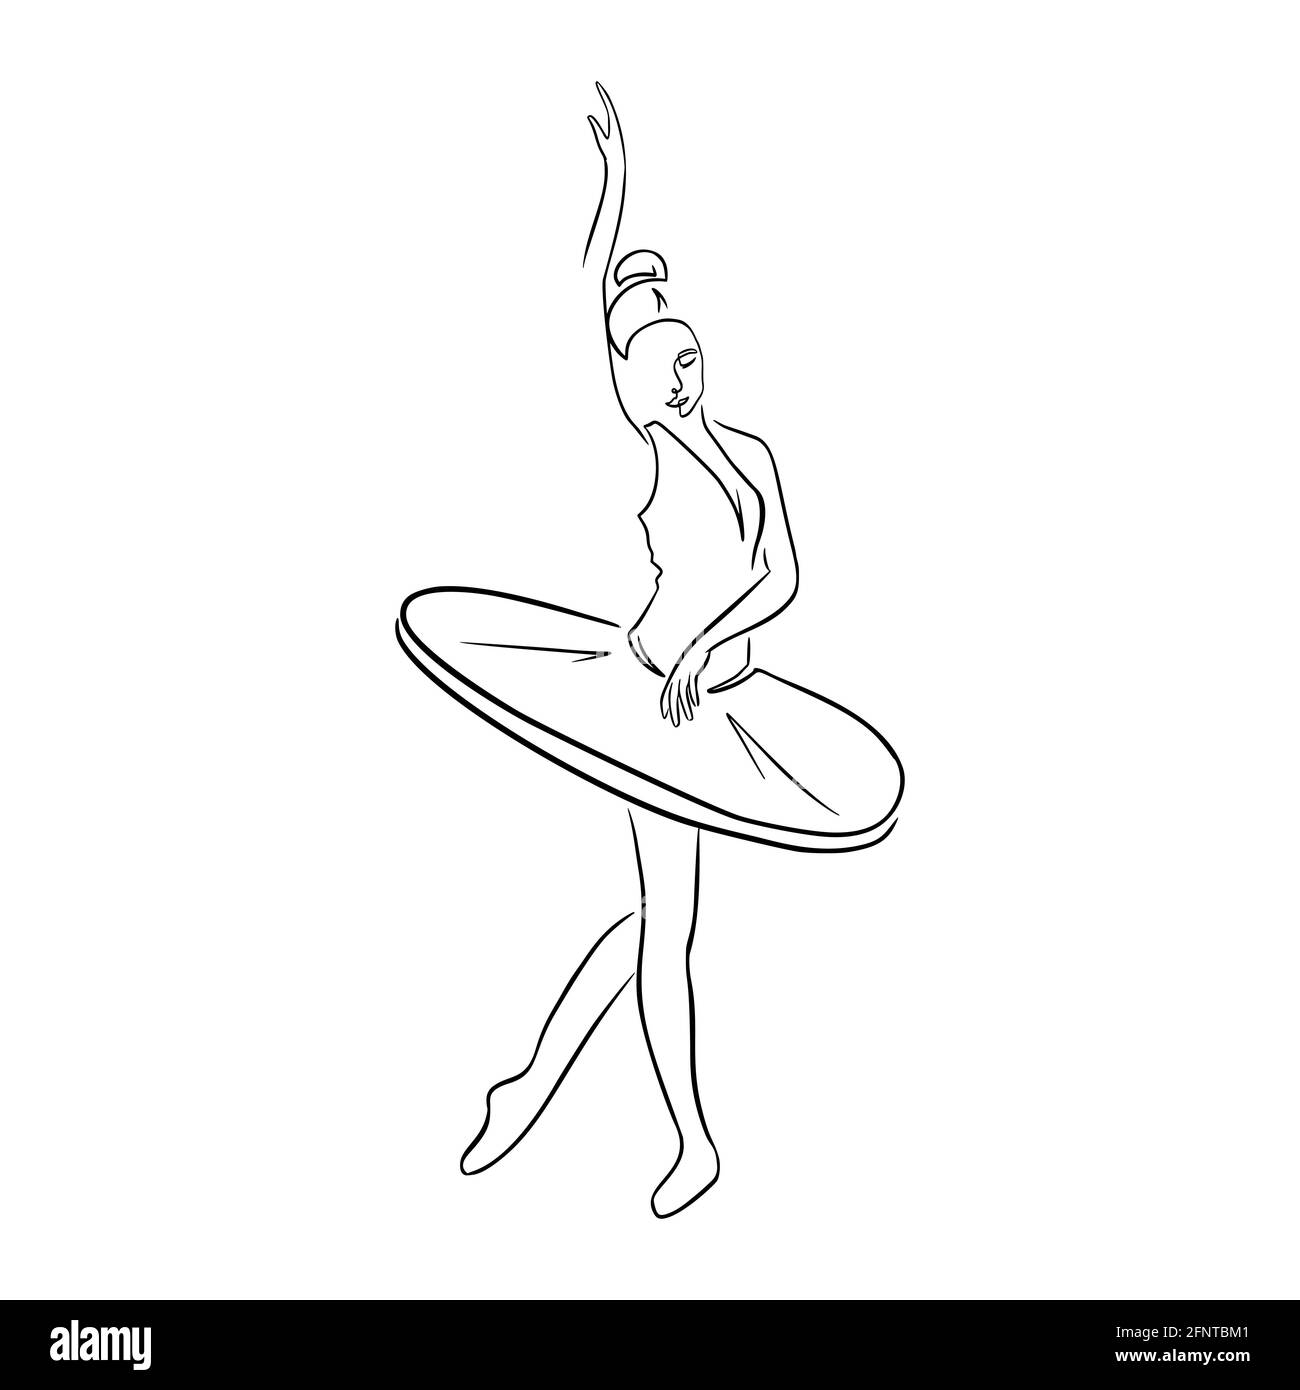 Dessin de ligne continue. Danseuse de ballet dessinée à la main dans une posture élégante illustration vectorielle isolée pour logo, modèle d'emblème, Web, imprimés Illustration de Vecteur